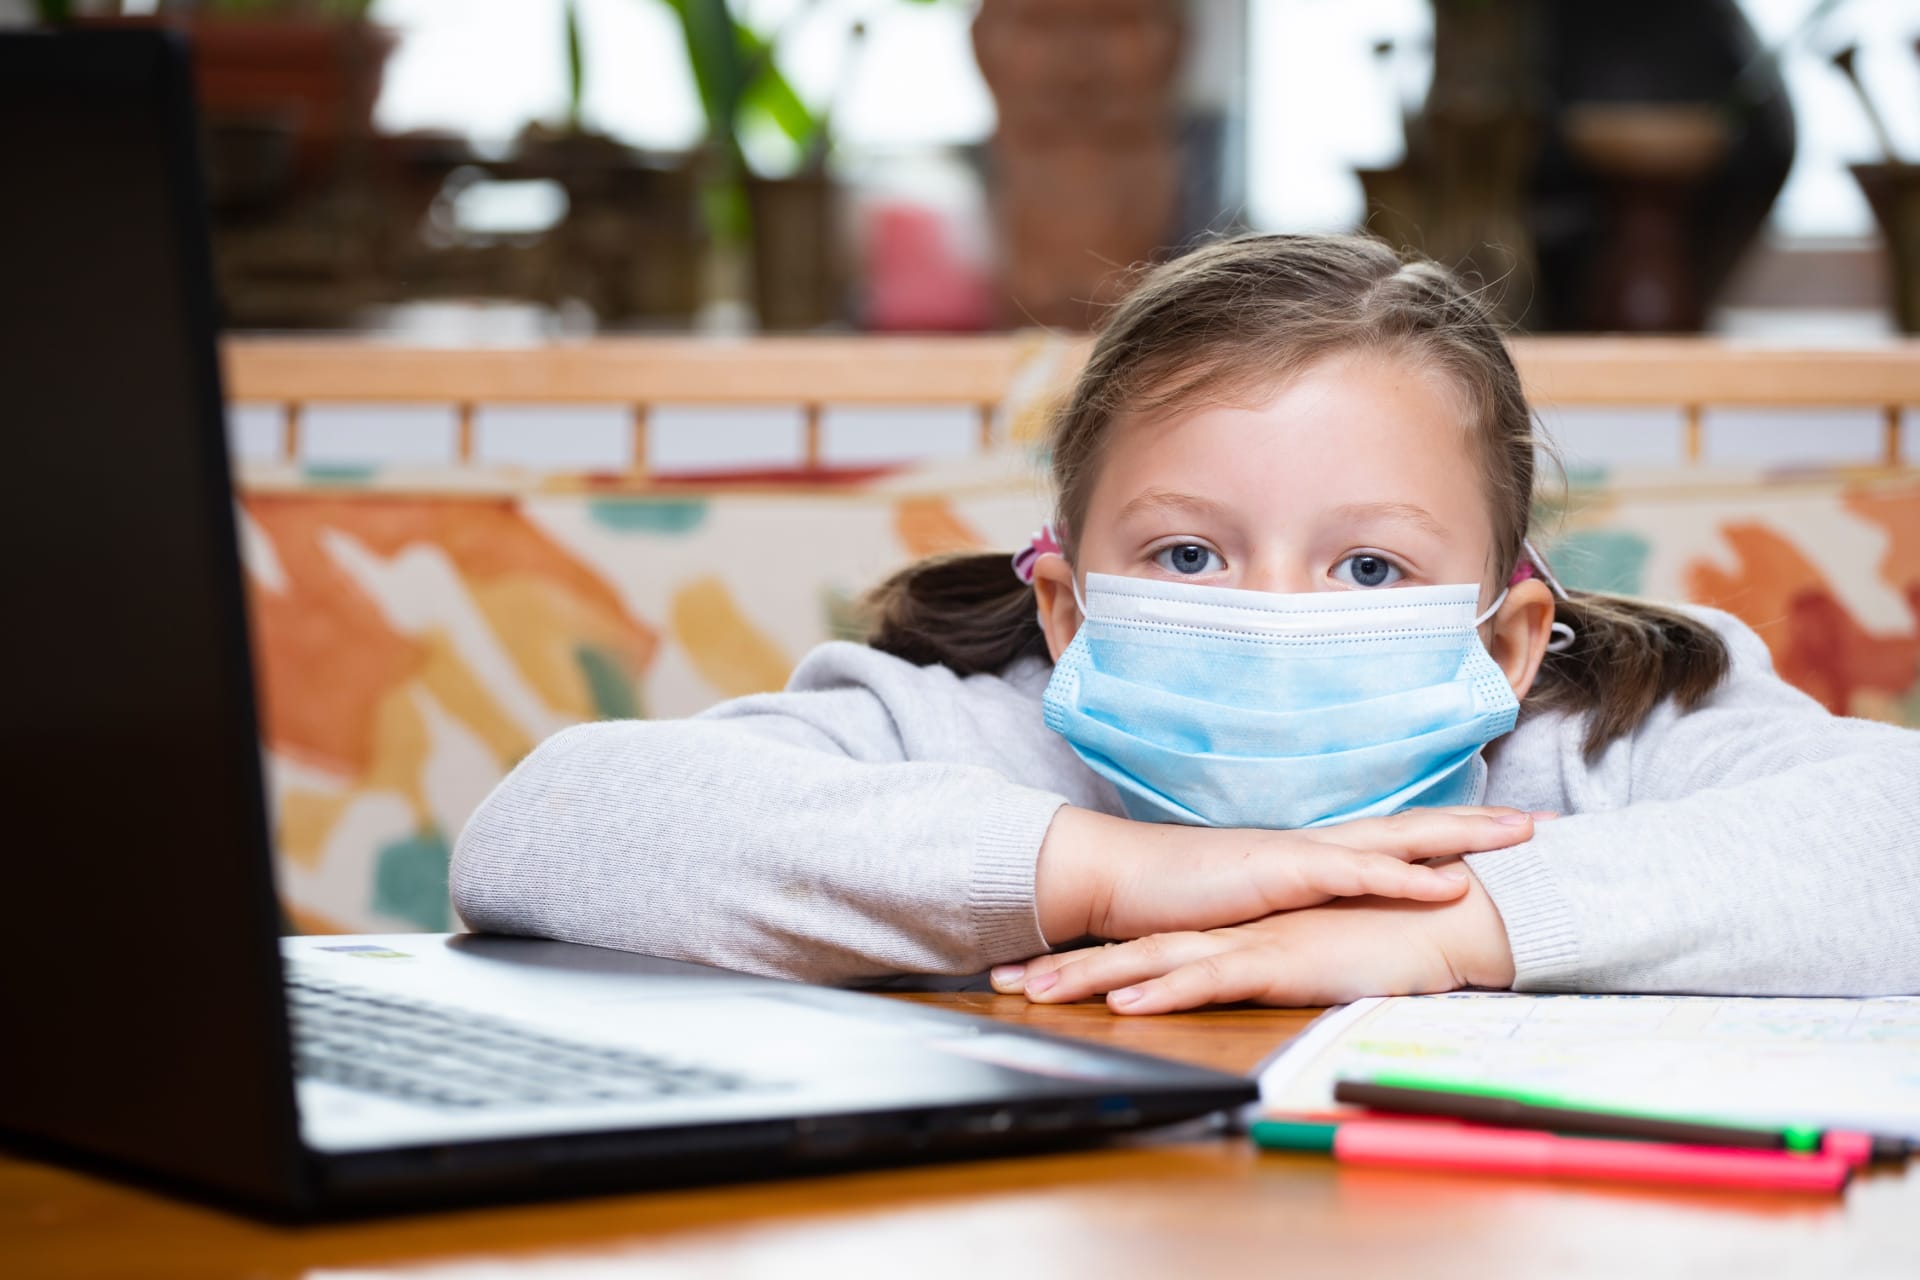 Vrátí se děti do škol? Vláda to podmiňuje testováním dětí na koronavirus, rodičům se to nelíbí. (Ilustrativní foto)